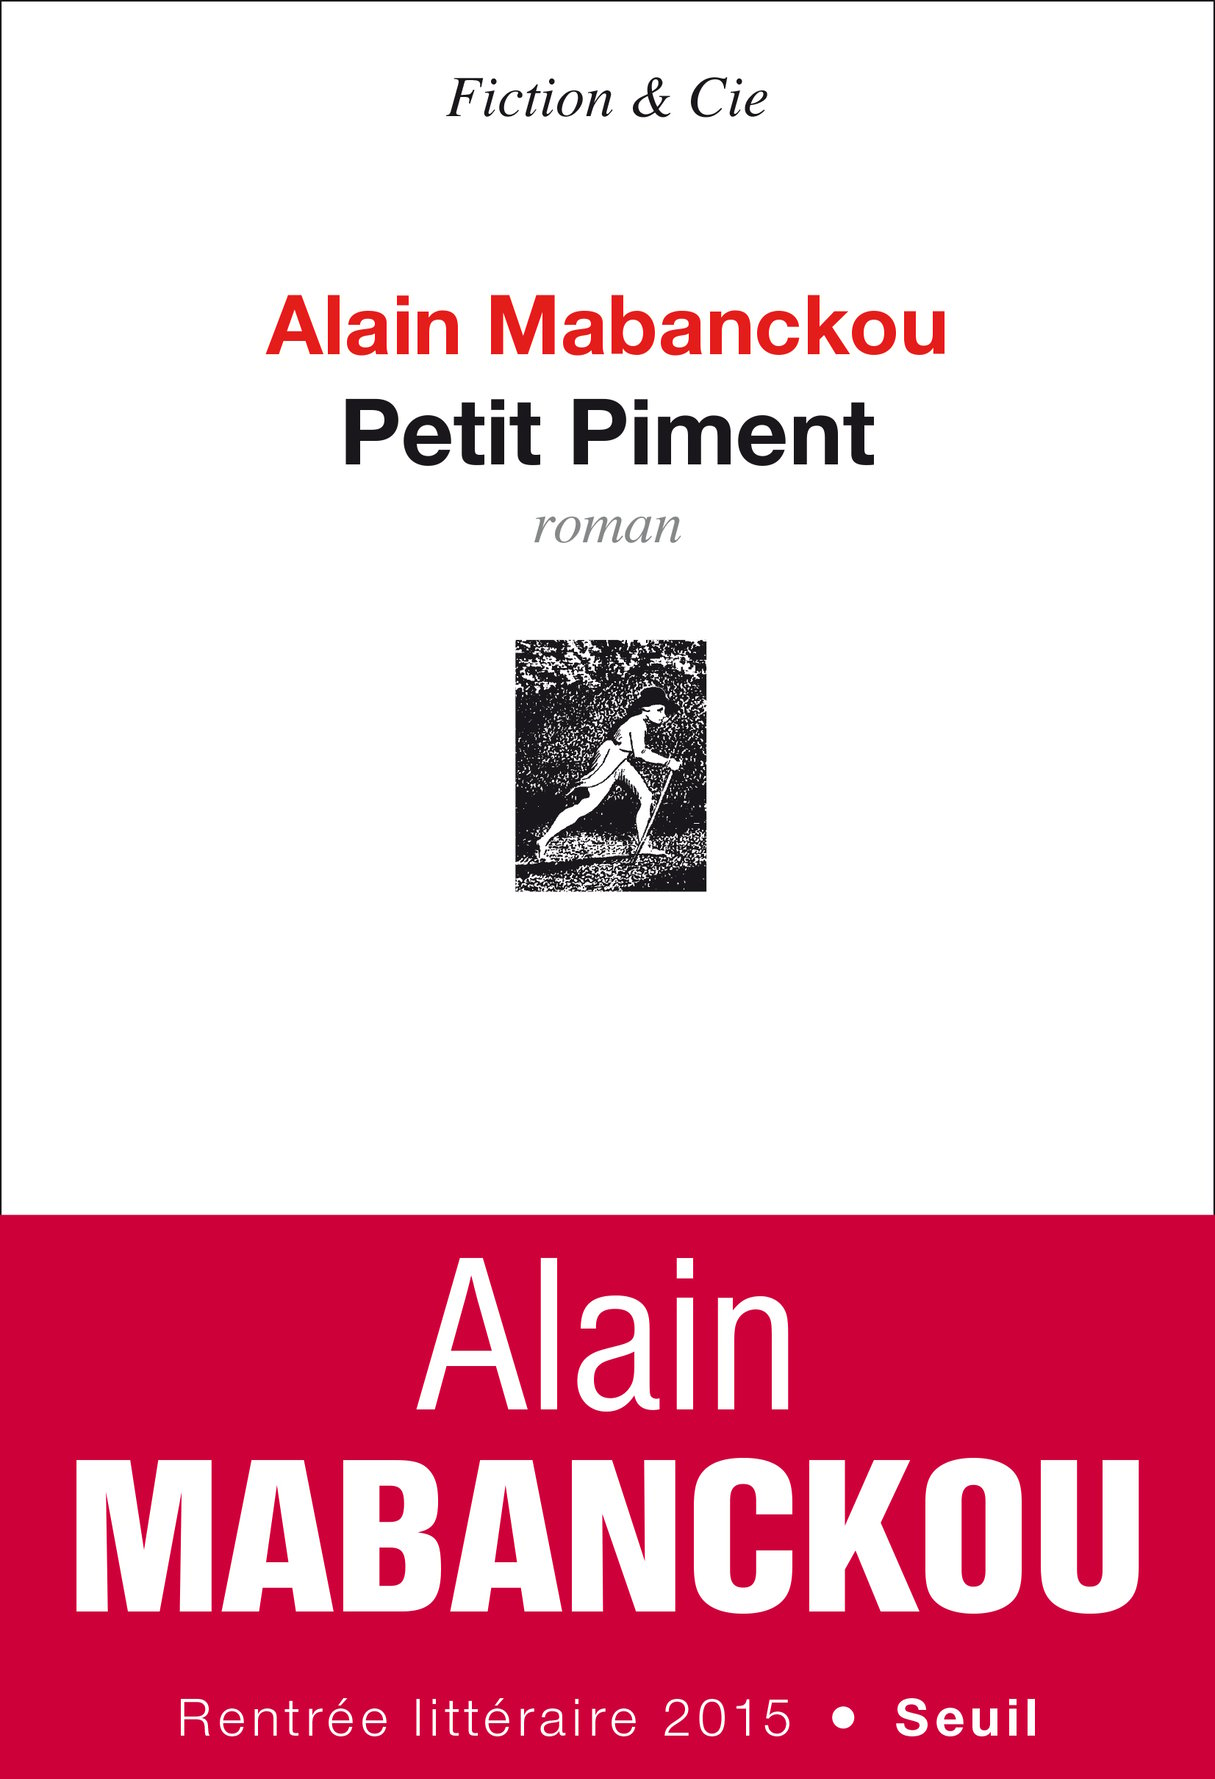 Petit Piment, d’Alain Mabanckou, éd. du Seuil, 288 pages, 18,50 euros, à paraître le 20 août.